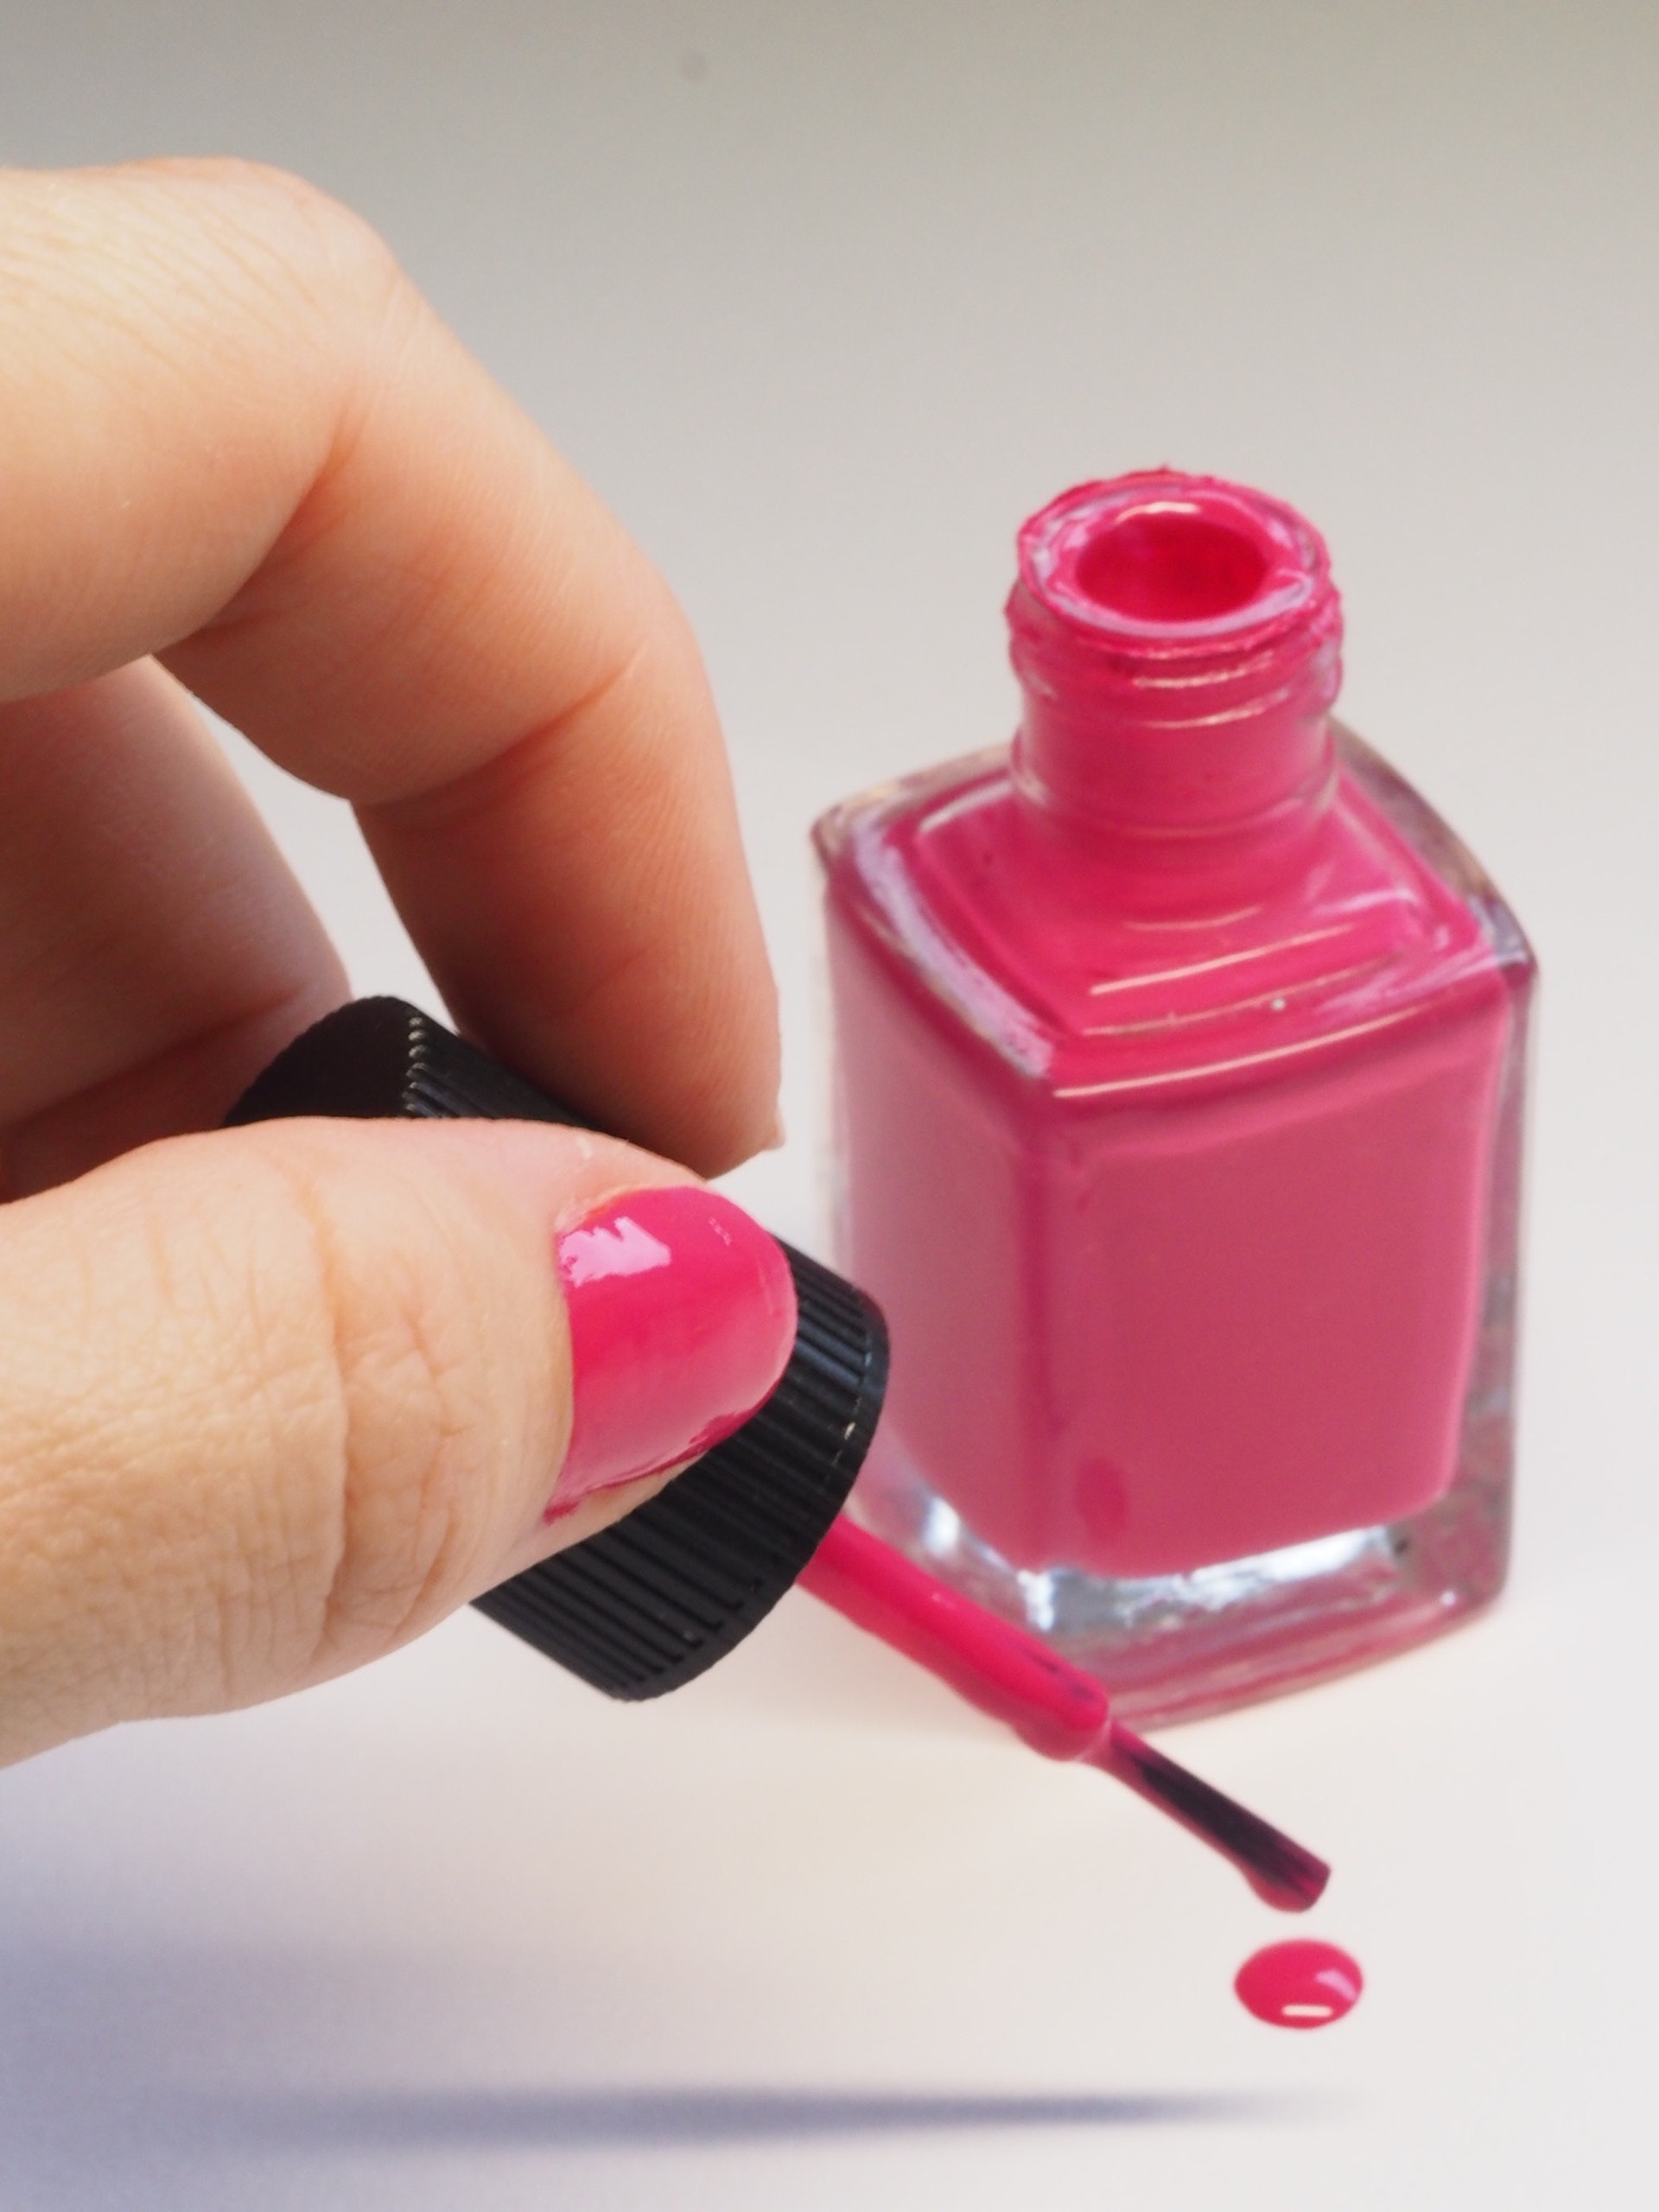 Eine rosa Nagellackflasche | Quelle: Pexels